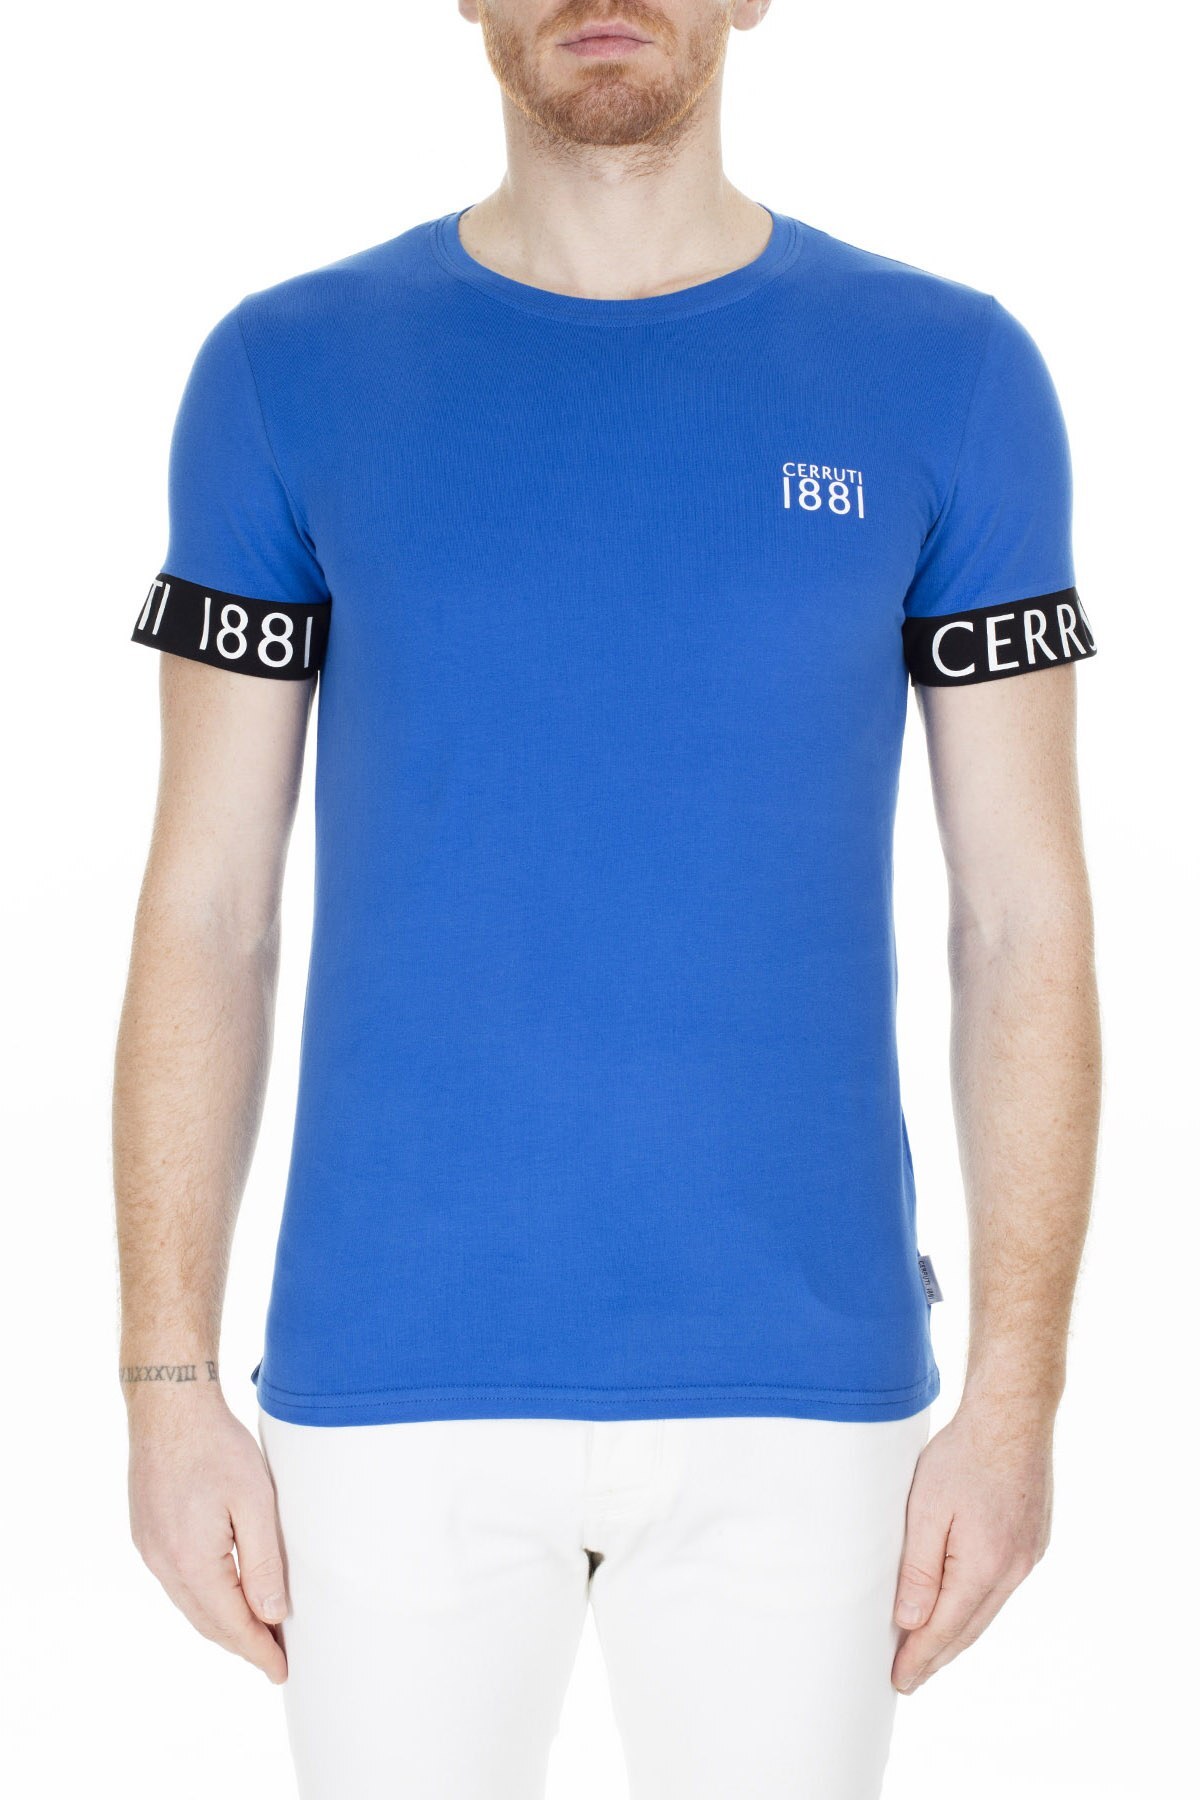 Cerruti 1881 Erkek T Shirt 203-001643 SAKS